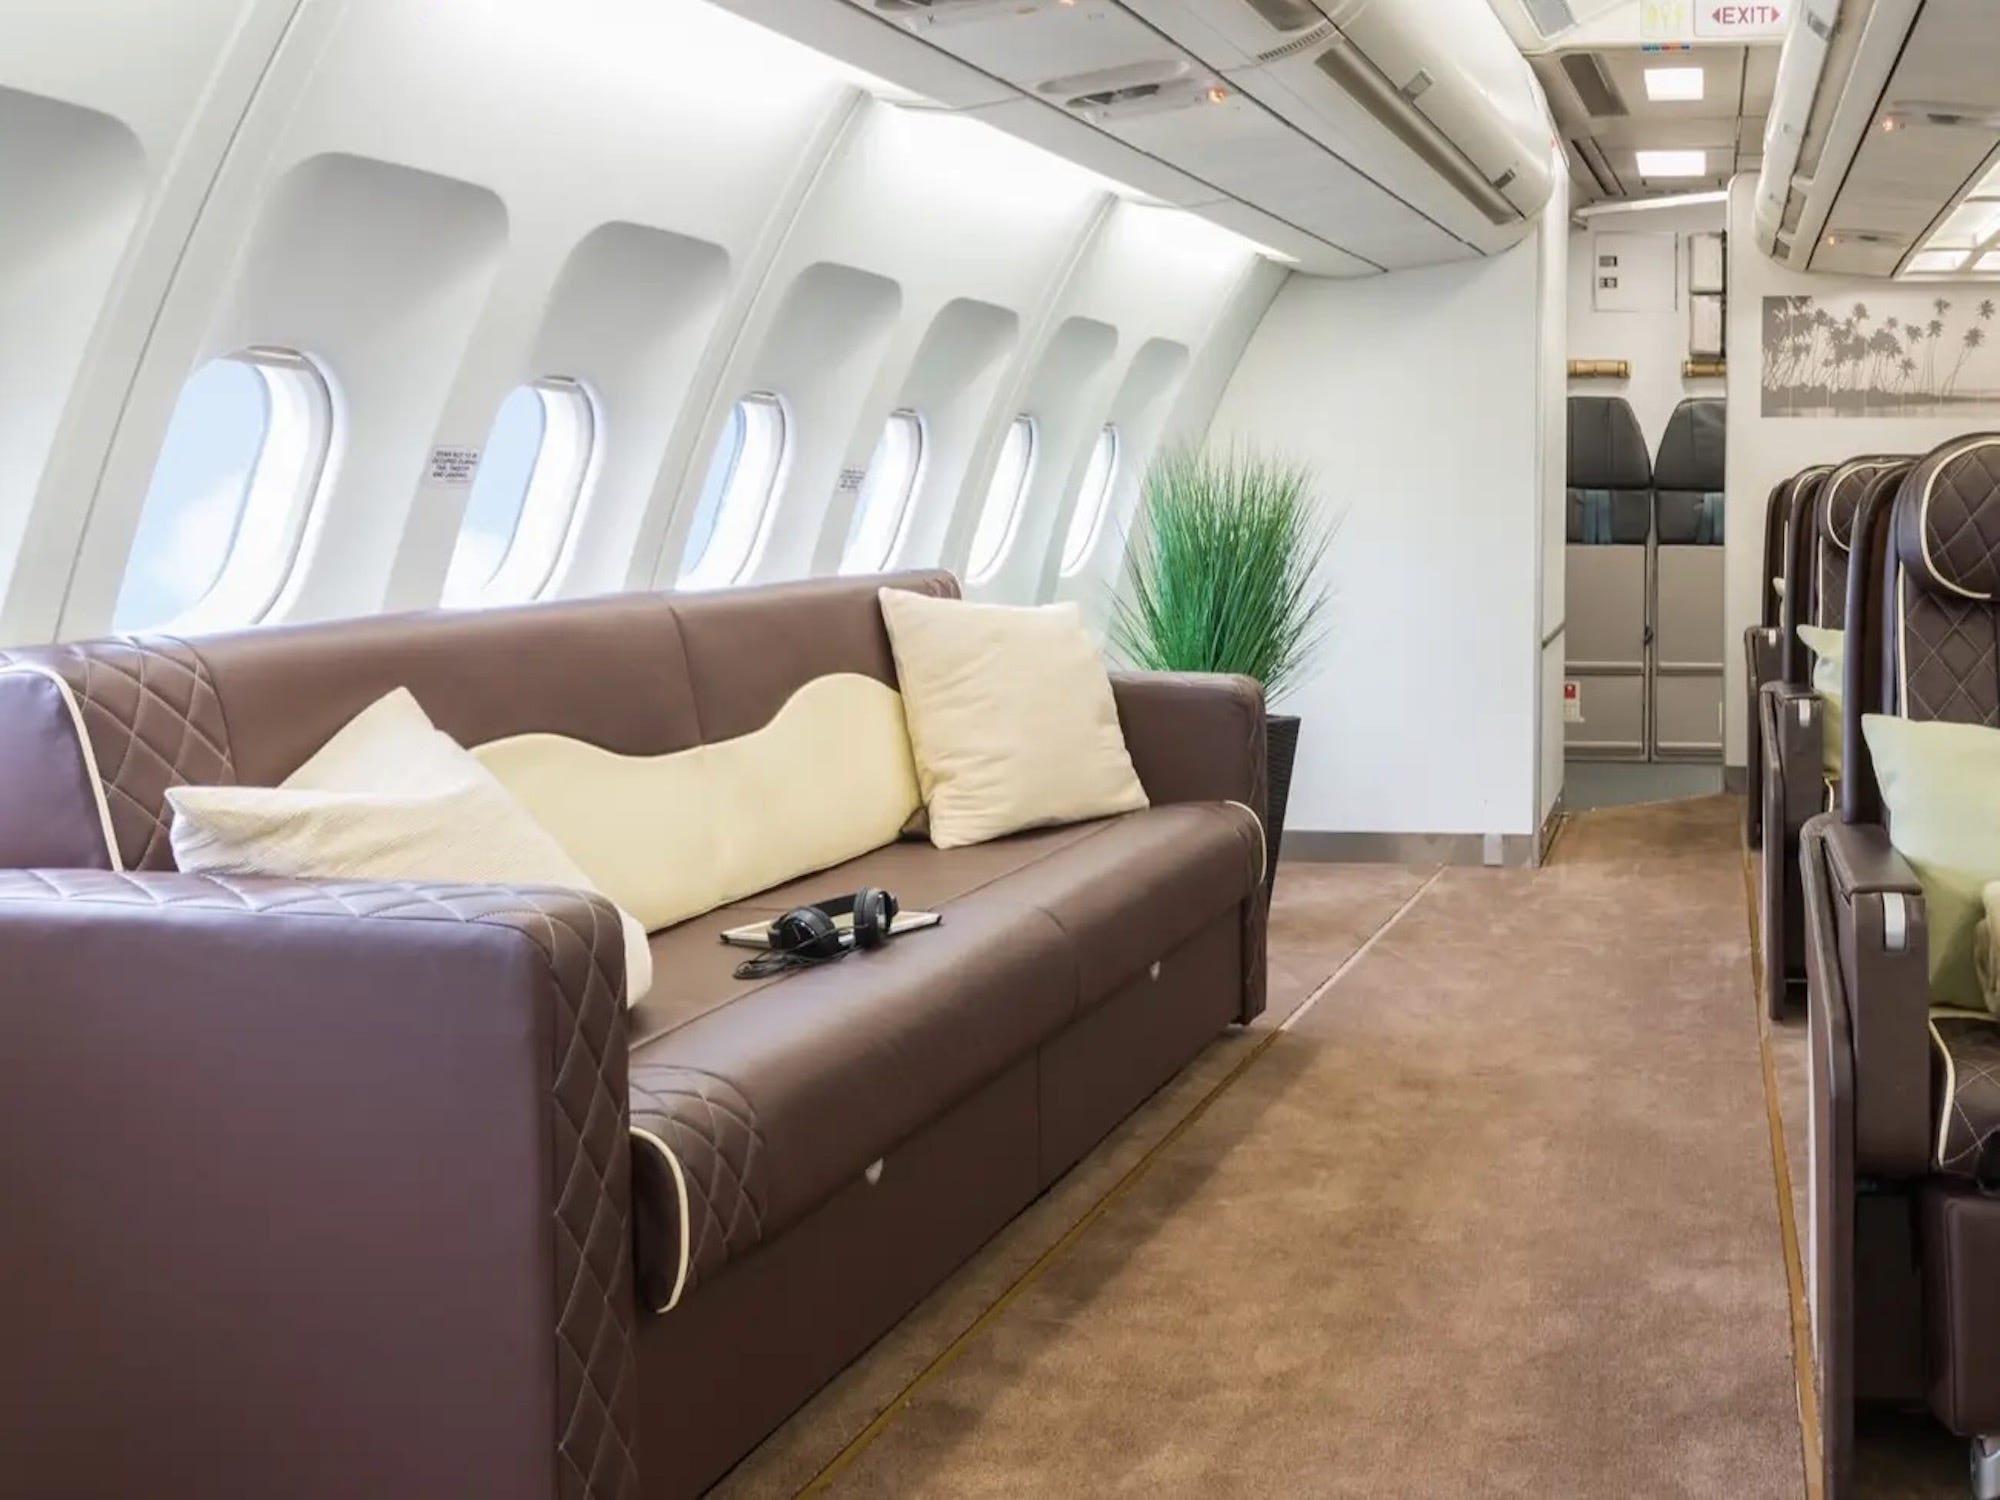 A340-Couch von AirX Charters im Loungebereich.